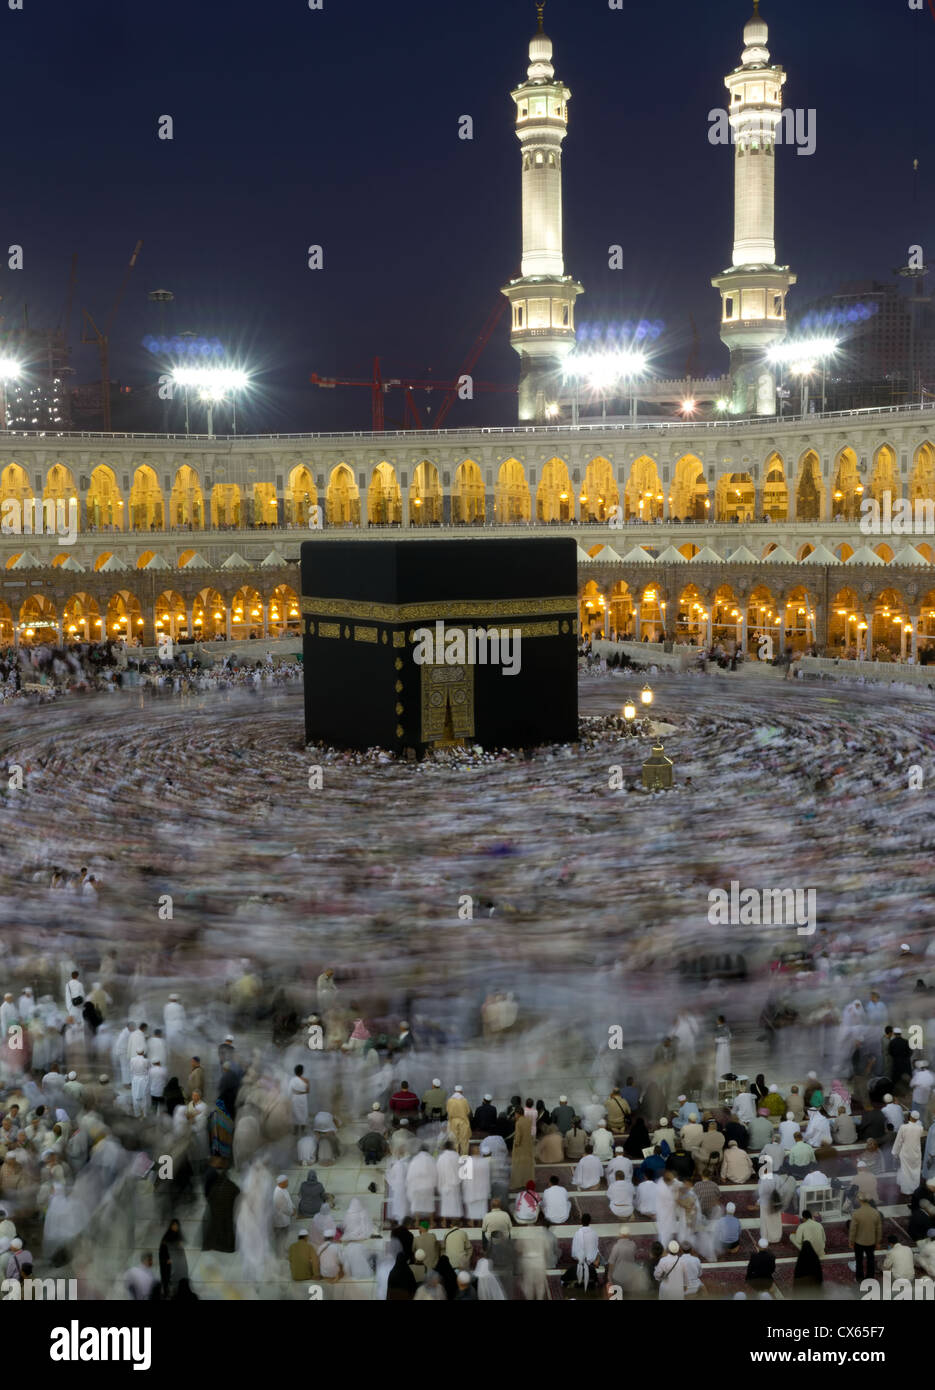 Les pèlerins de la Kaaba à circumambulate Masjidil haram) en février 2010, à La Mecque, Arabie saoudite. Banque D'Images